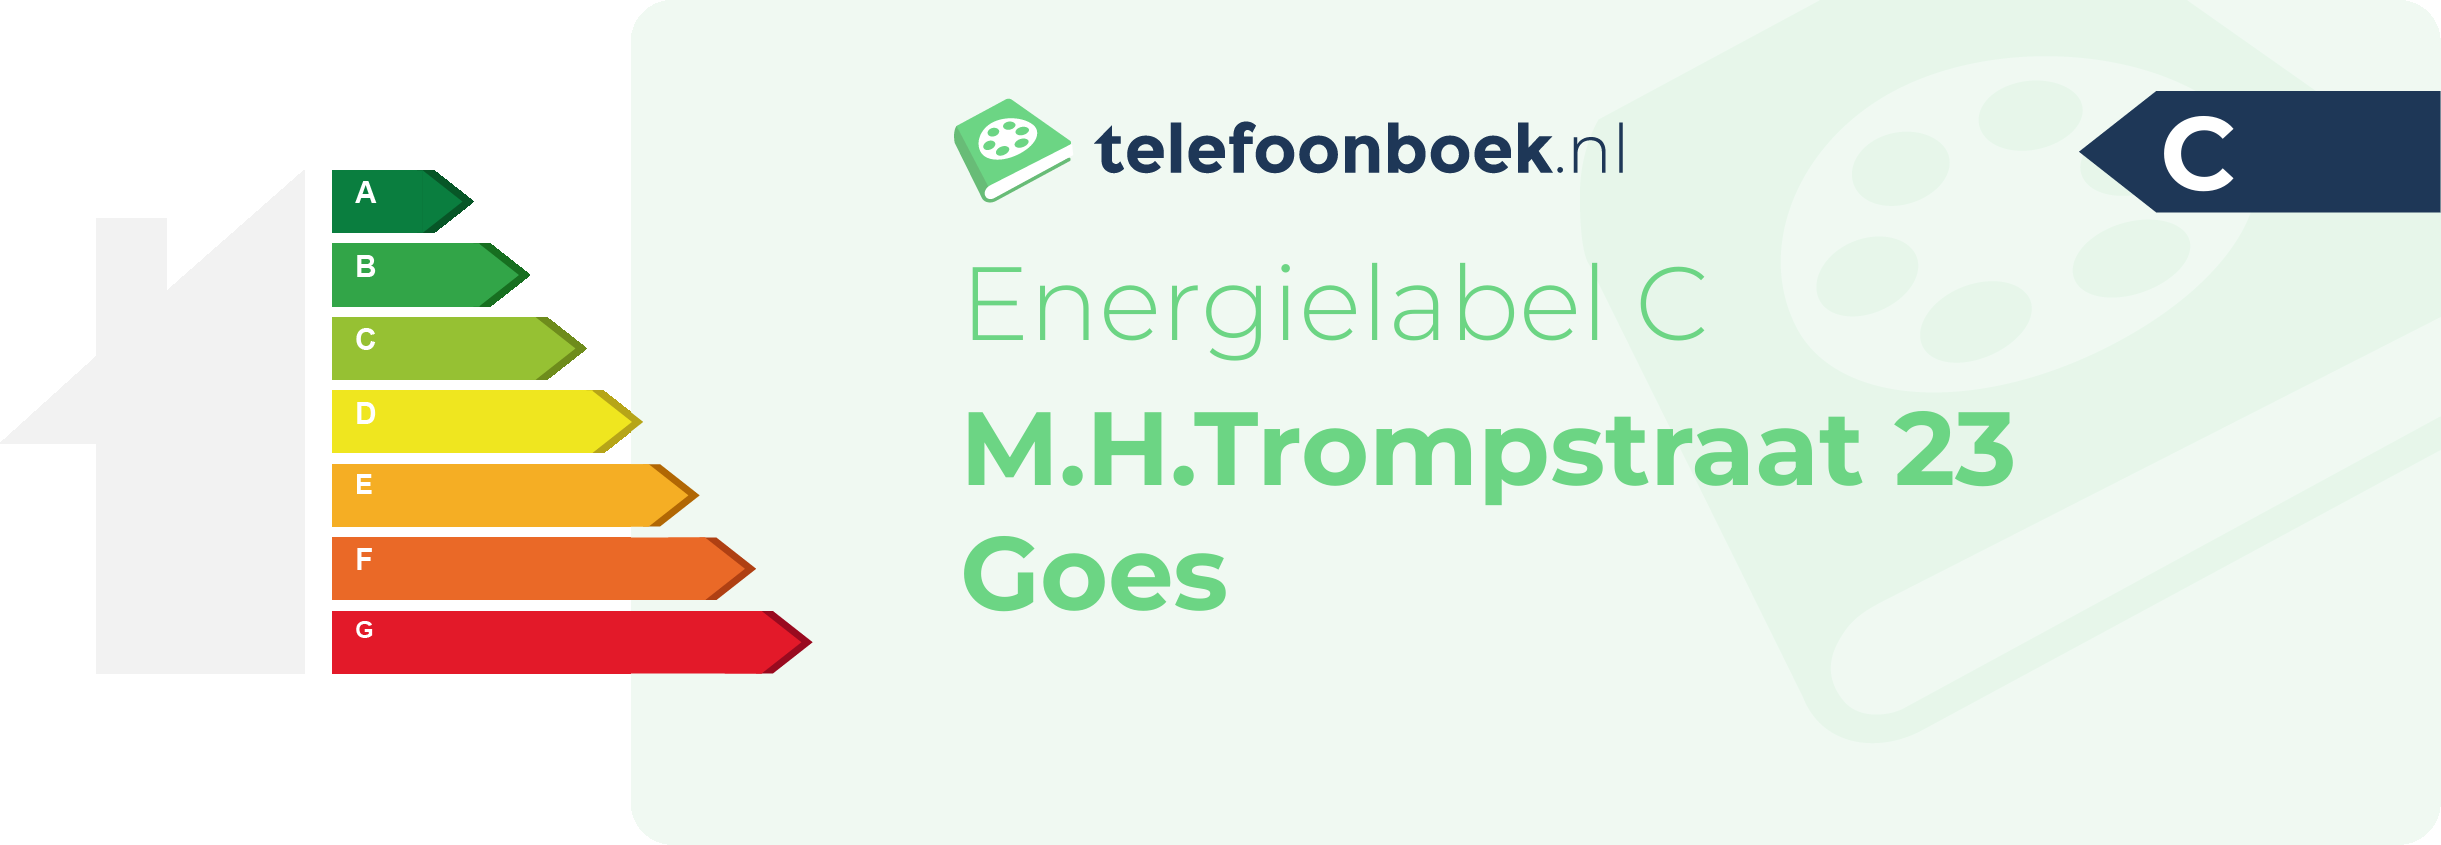 Energielabel M.H.Trompstraat 23 Goes